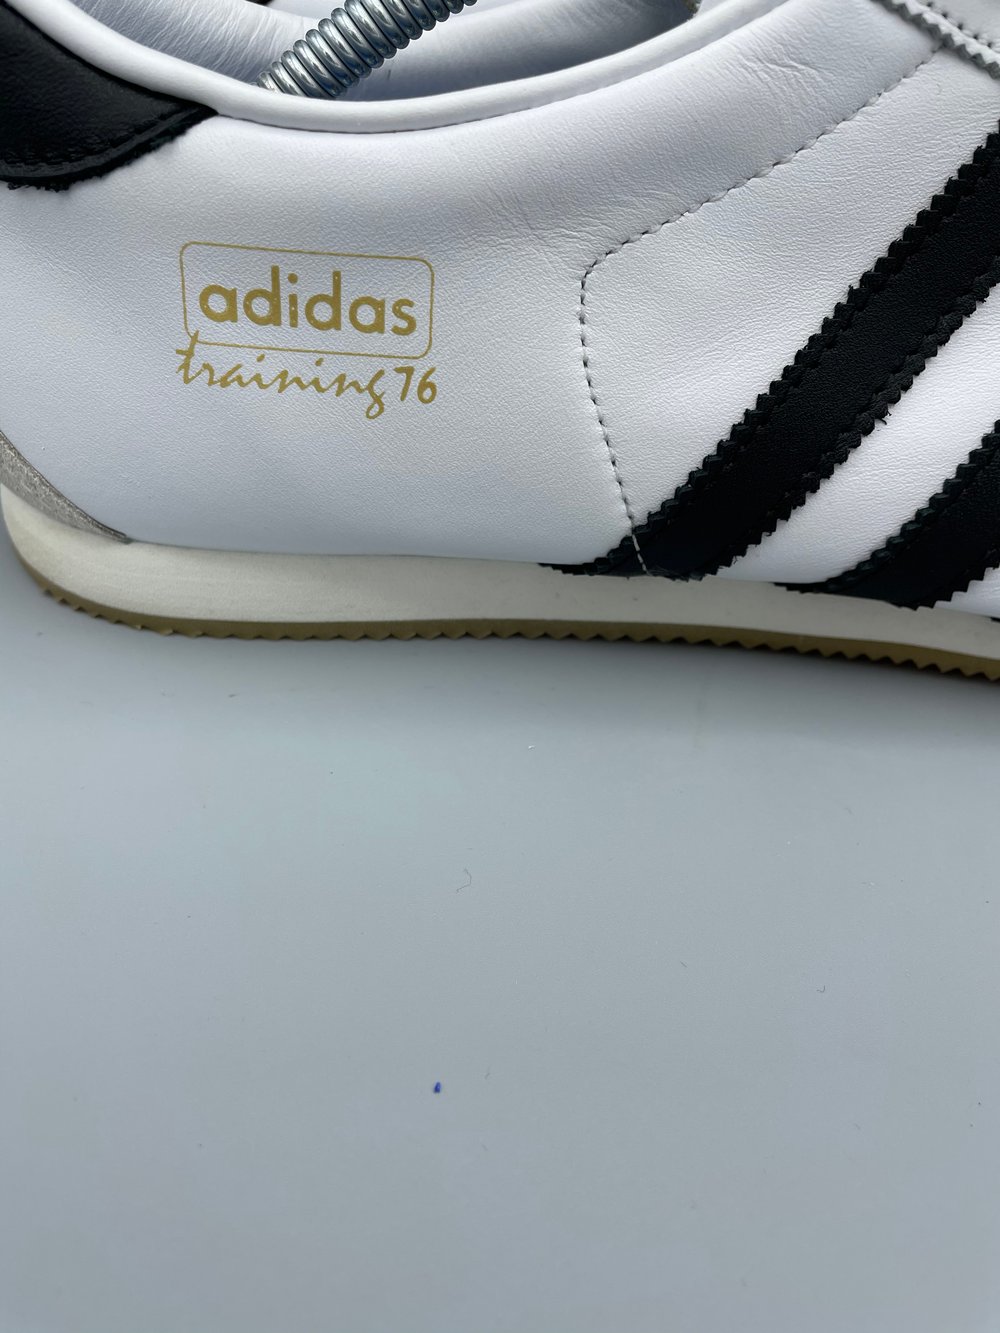 Adidas Training 76 Spzl - UK9.5